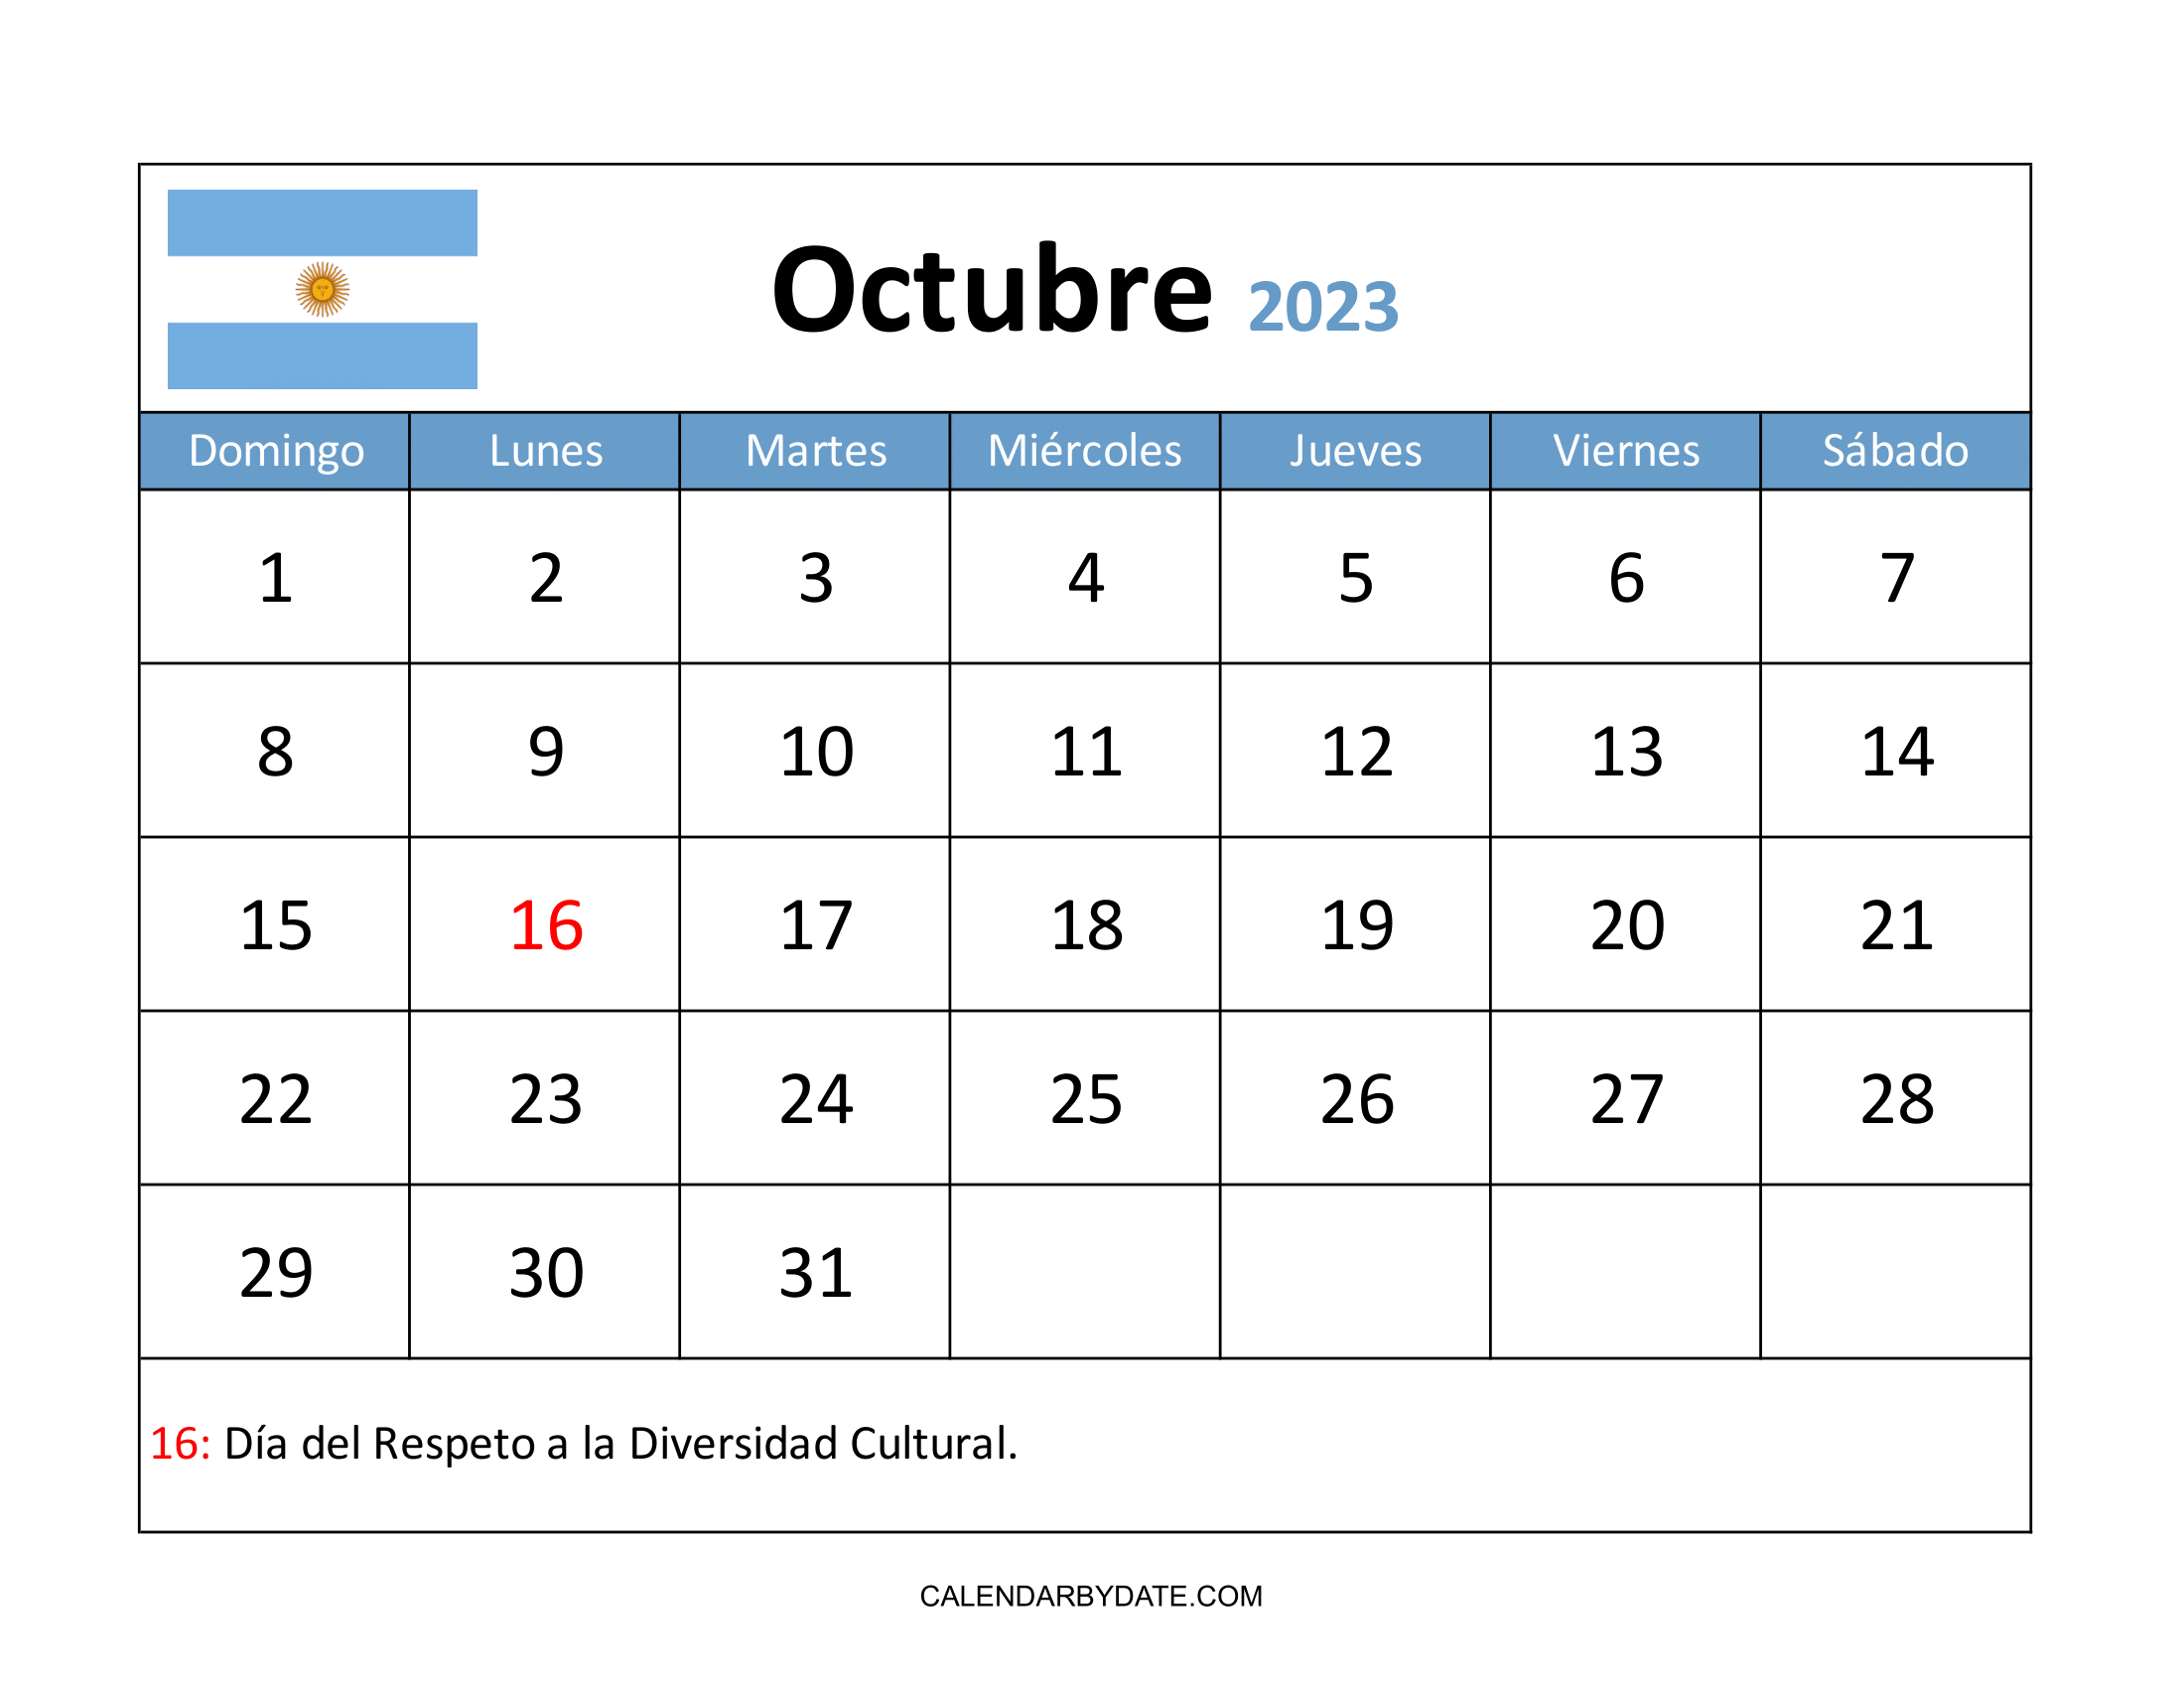 La colorida plantilla de calendario de octubre de 2023 se está diseñando en un diseño horizontal con las vacaciones y festivales de Argentina mencionados en la cuadrícula del calendario.